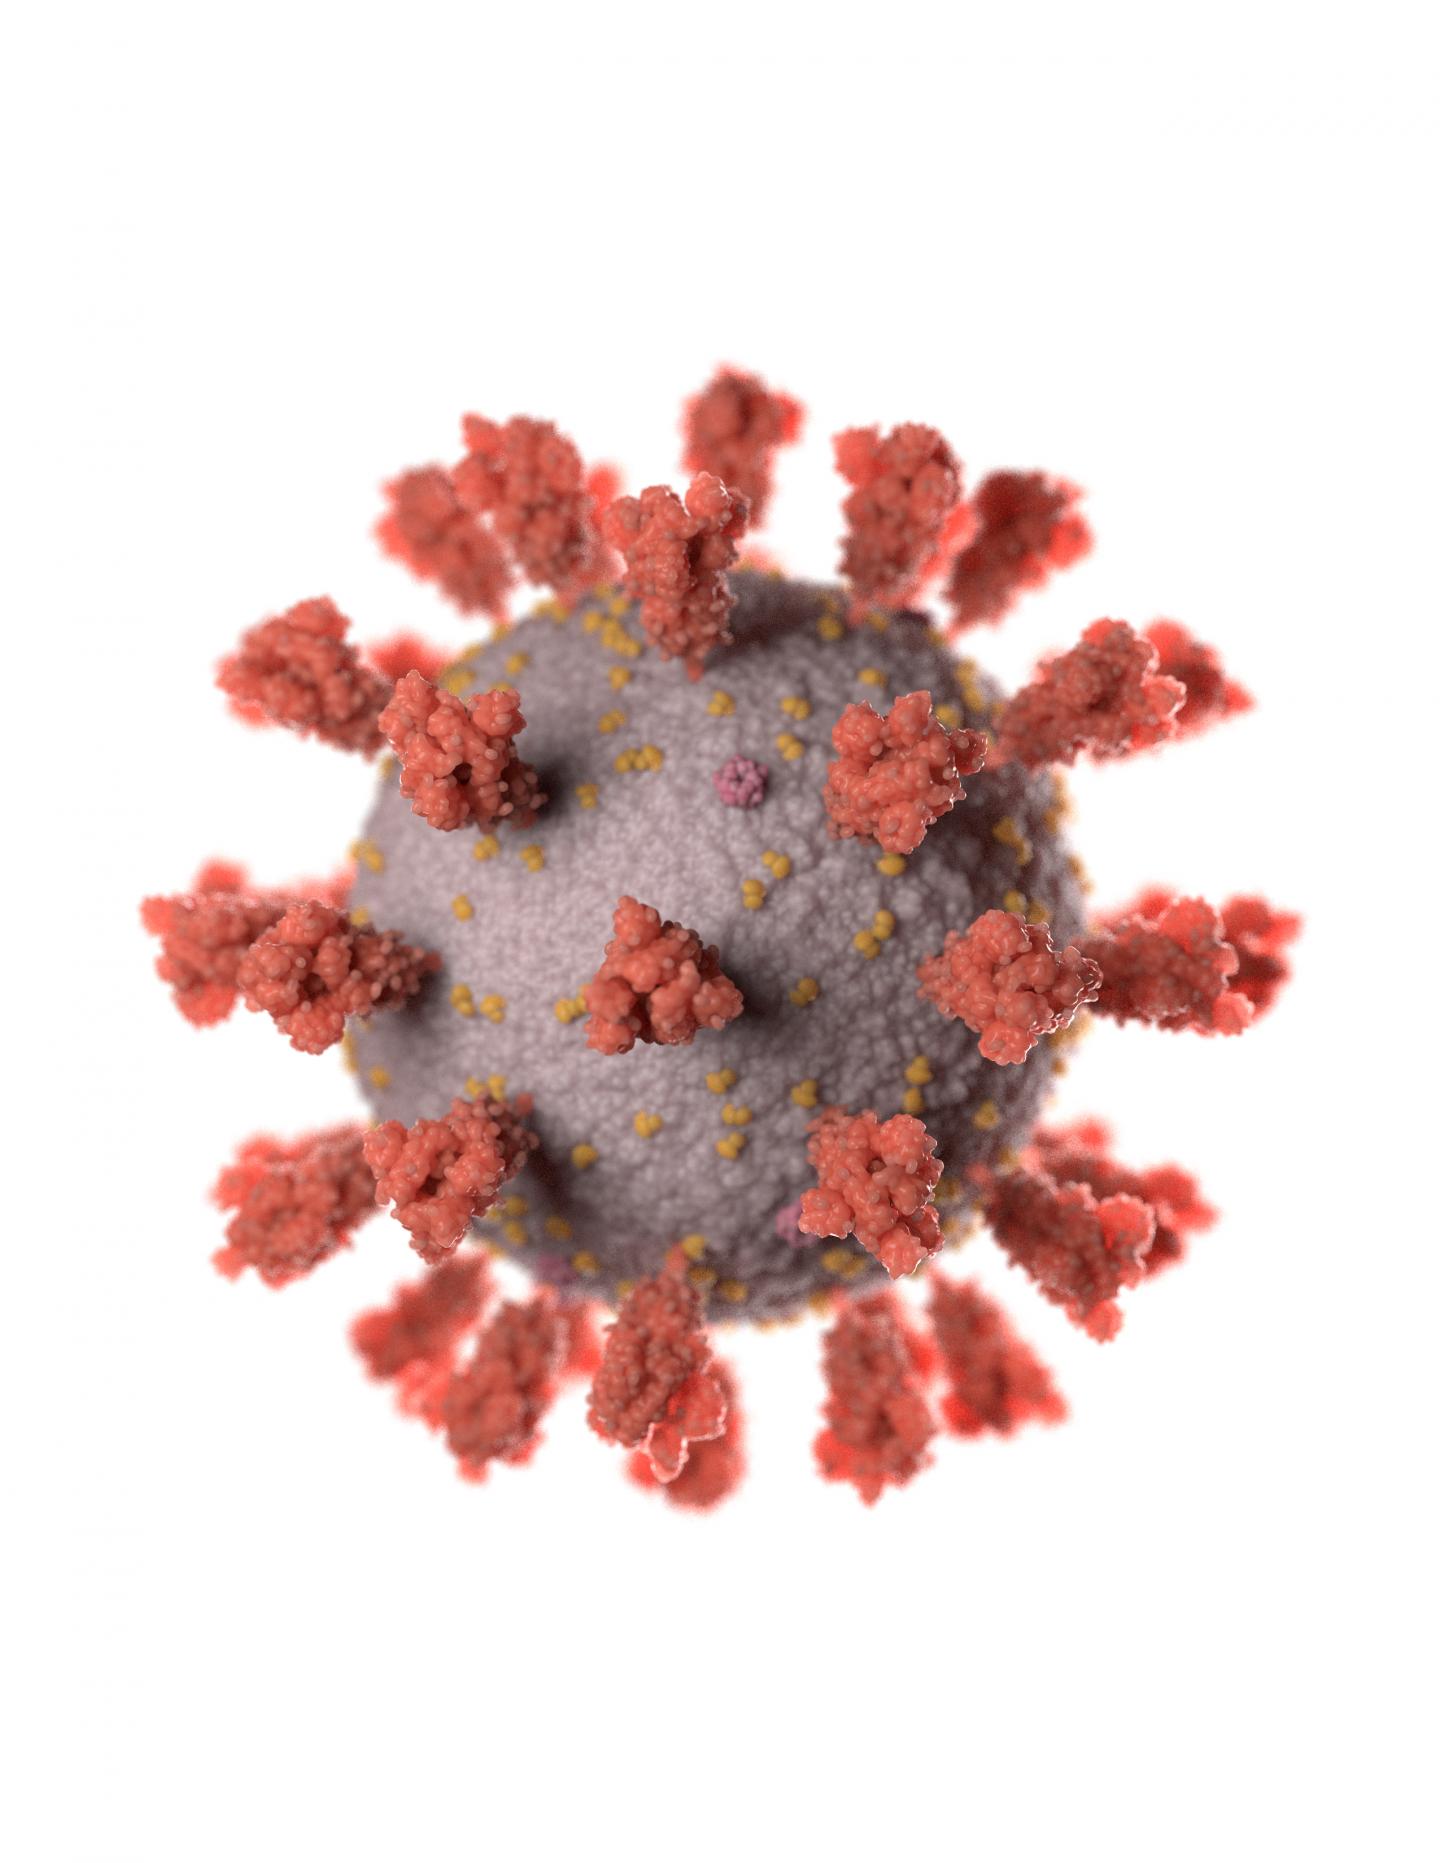 Salk coronavirus illustration